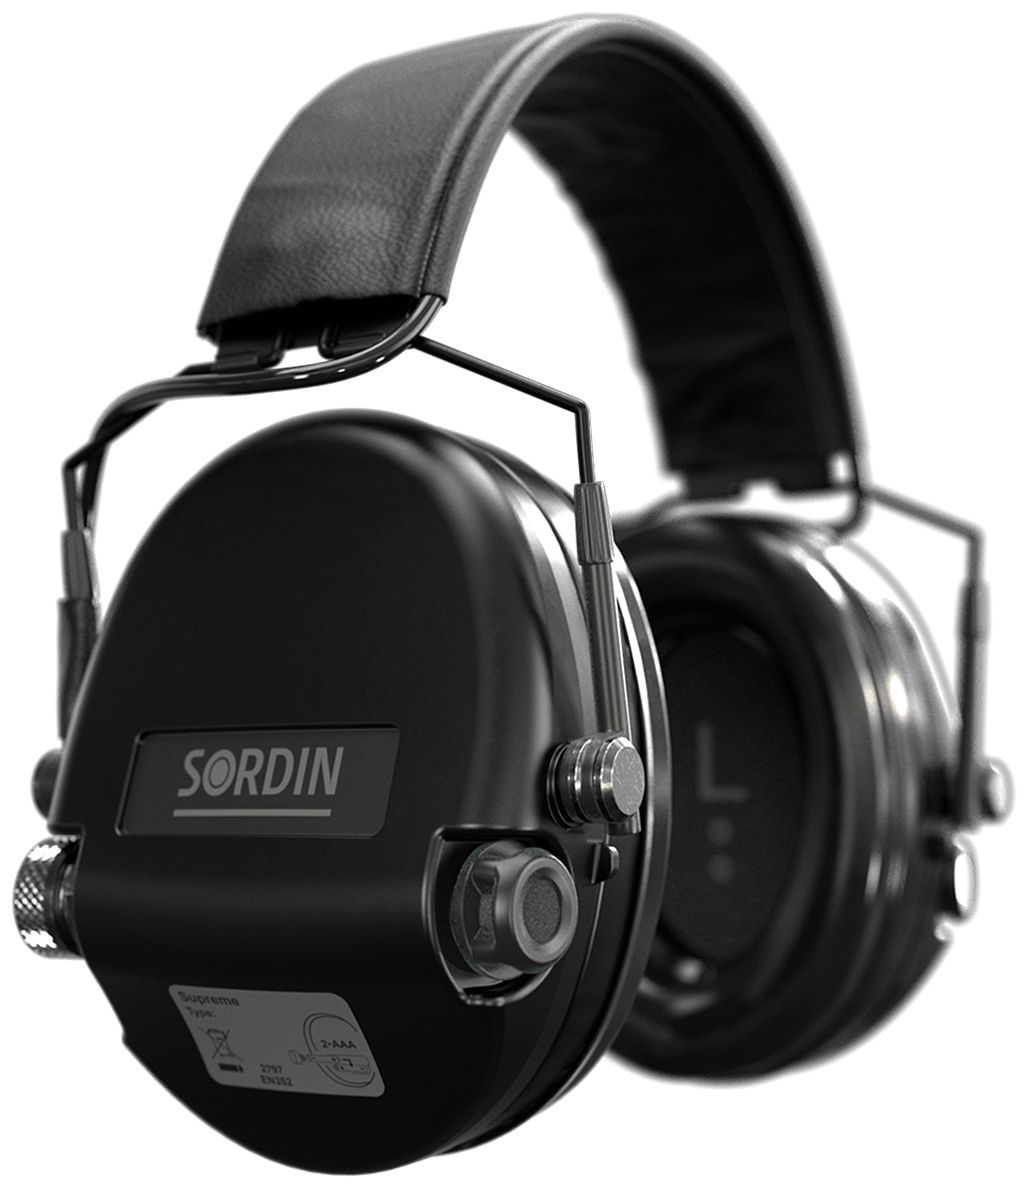 Sordin Supreme MIL SFA Gehörschutz - aktiver Militär-Gehörschützer - 26-32 dB SNR dank Dämmungs-Ring